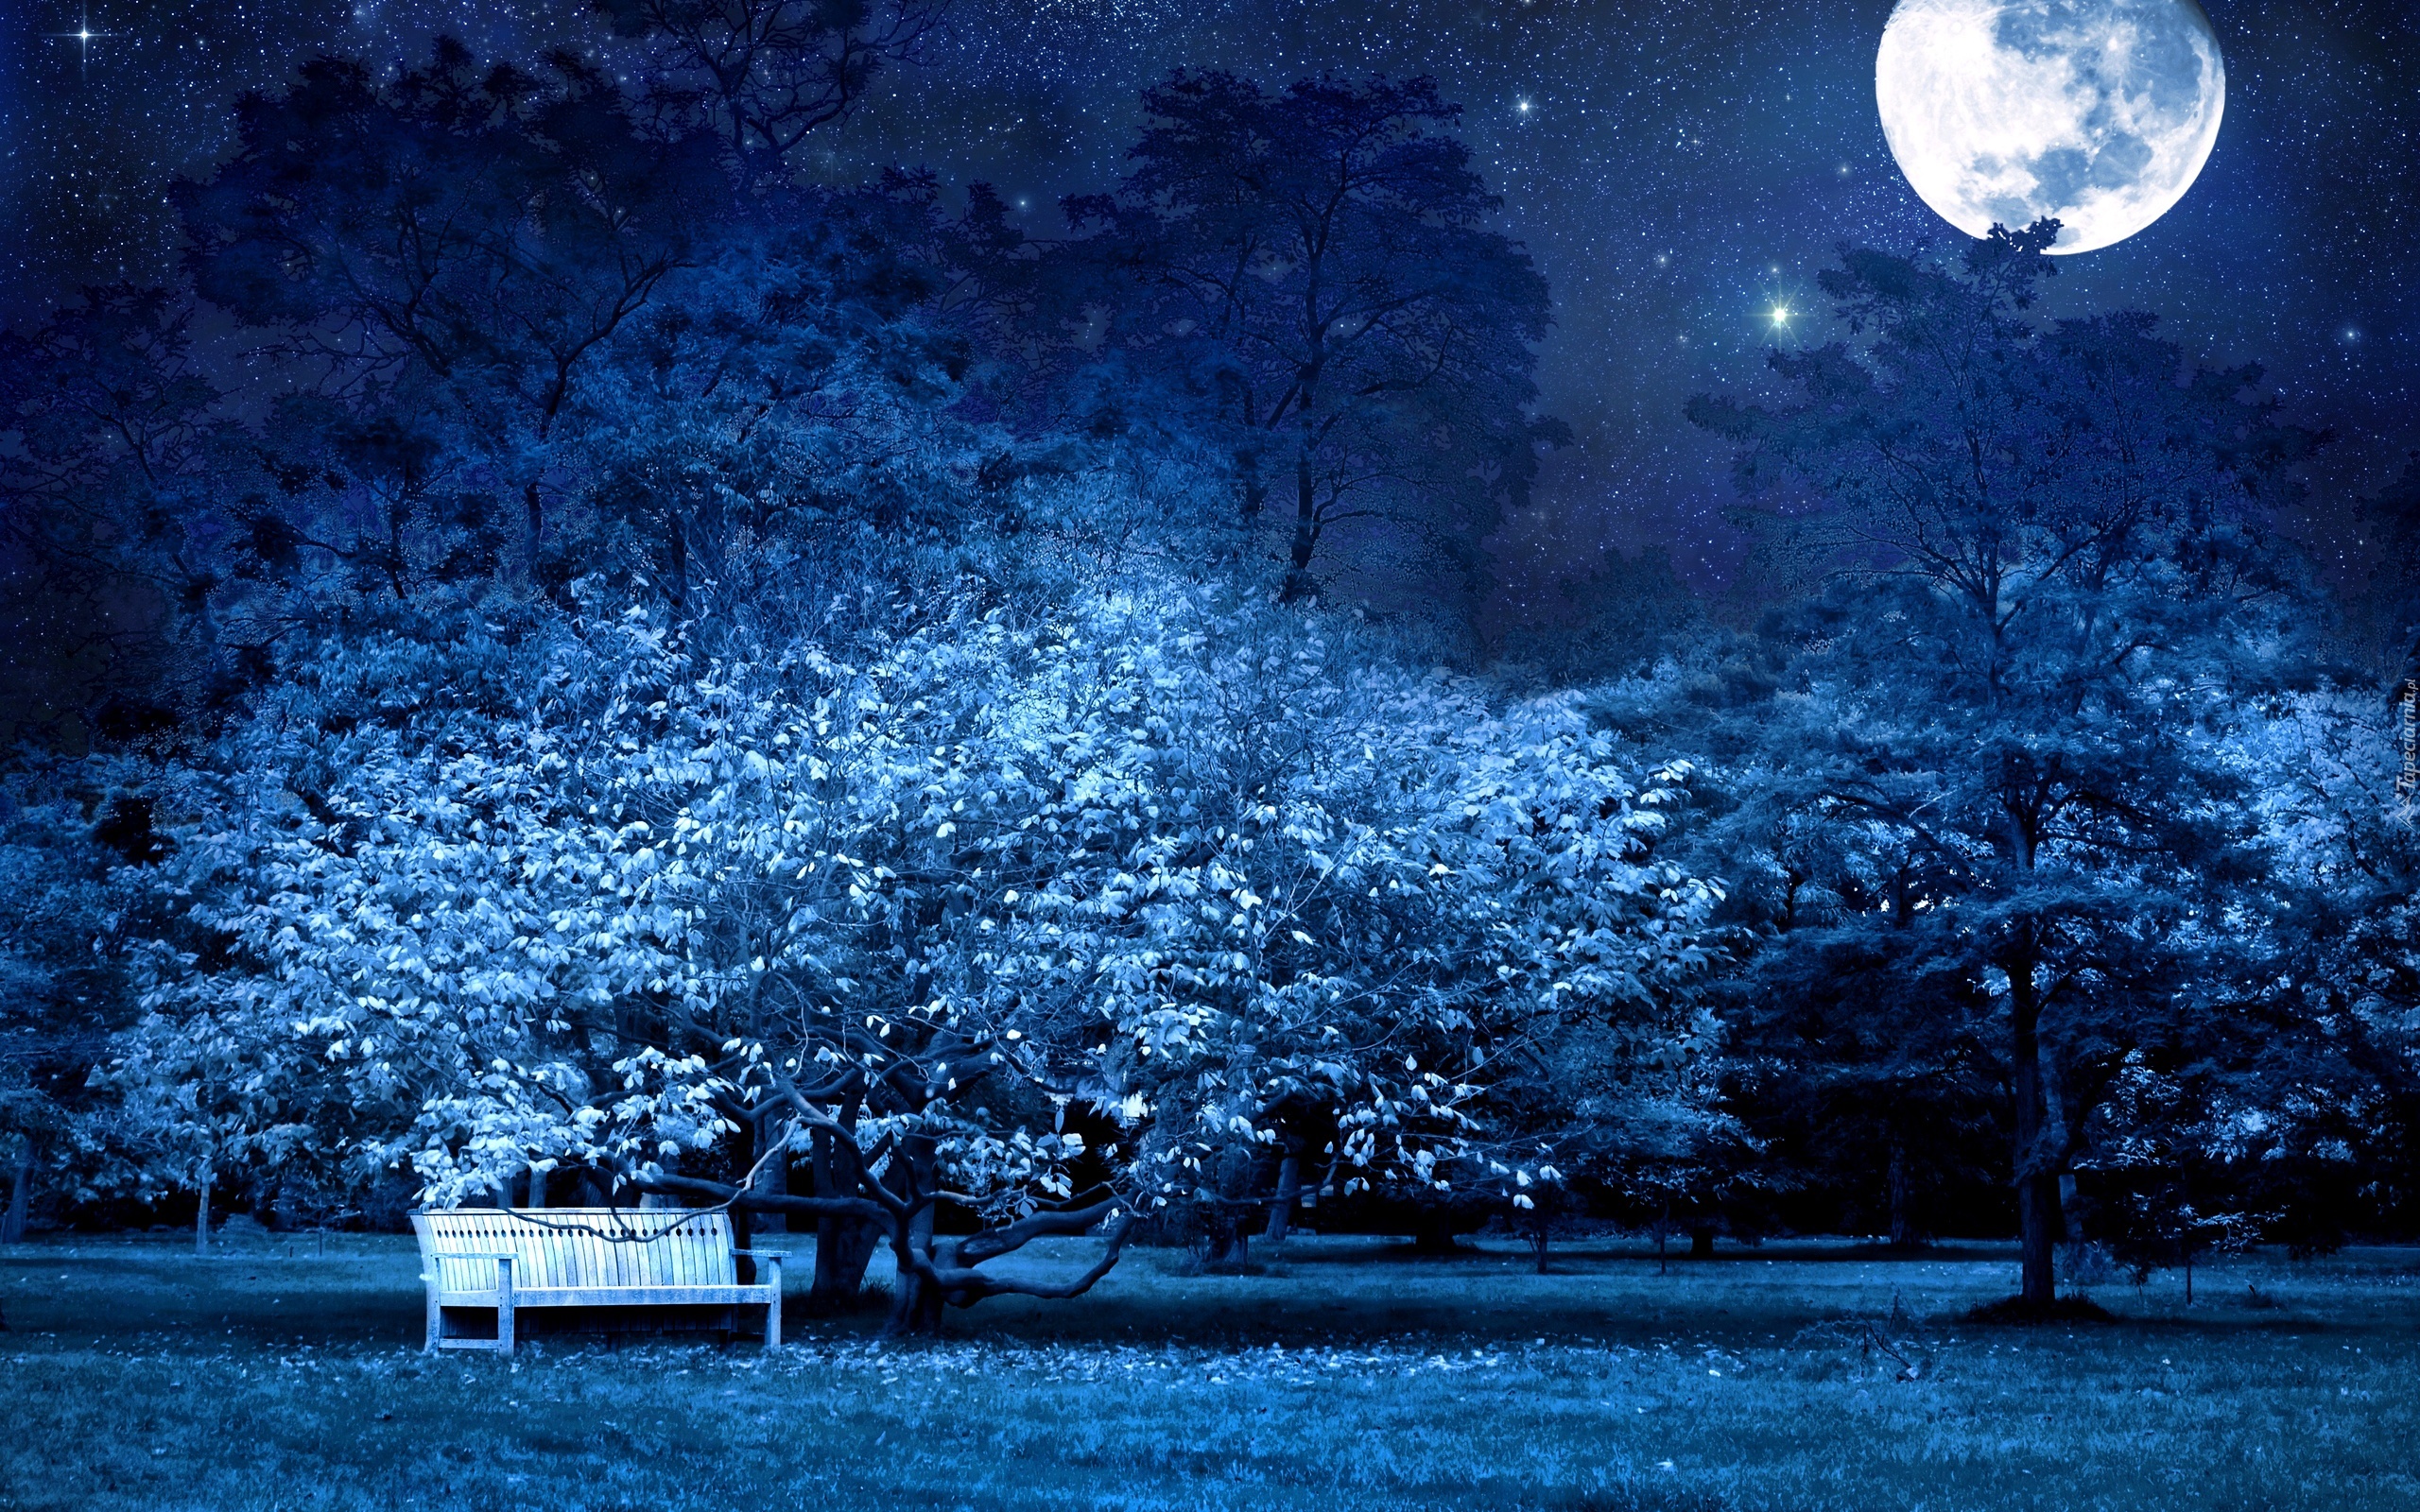 Park, Noc, Księżyc, Gwiazdy, Ławka